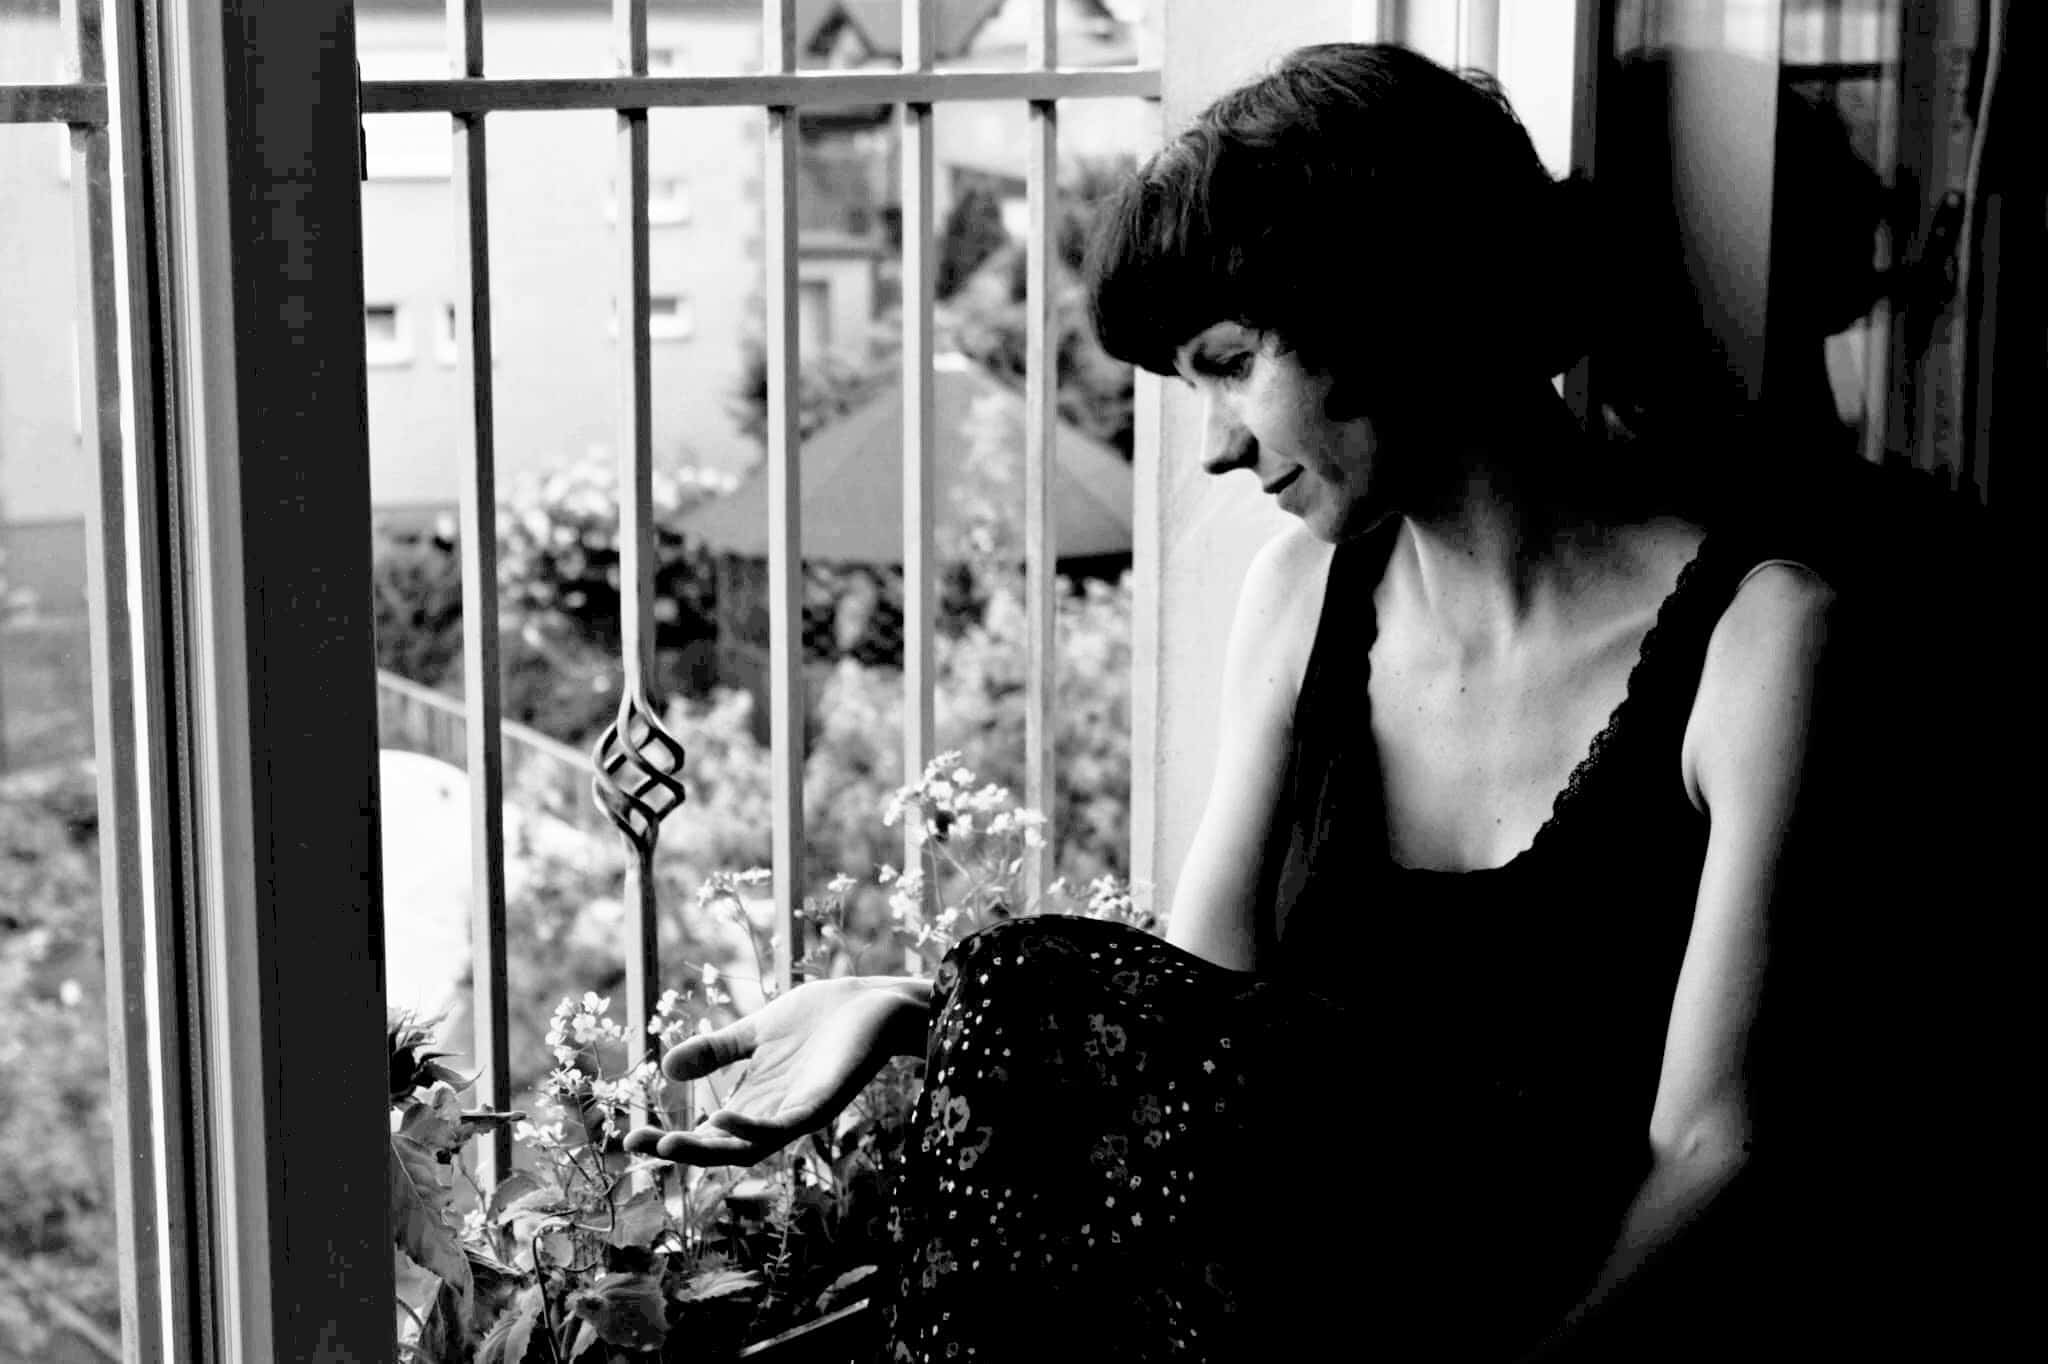 Ola, siedzi w oknie, zdjęcie czarno - białe, melancholijne, bo tematem jest czas